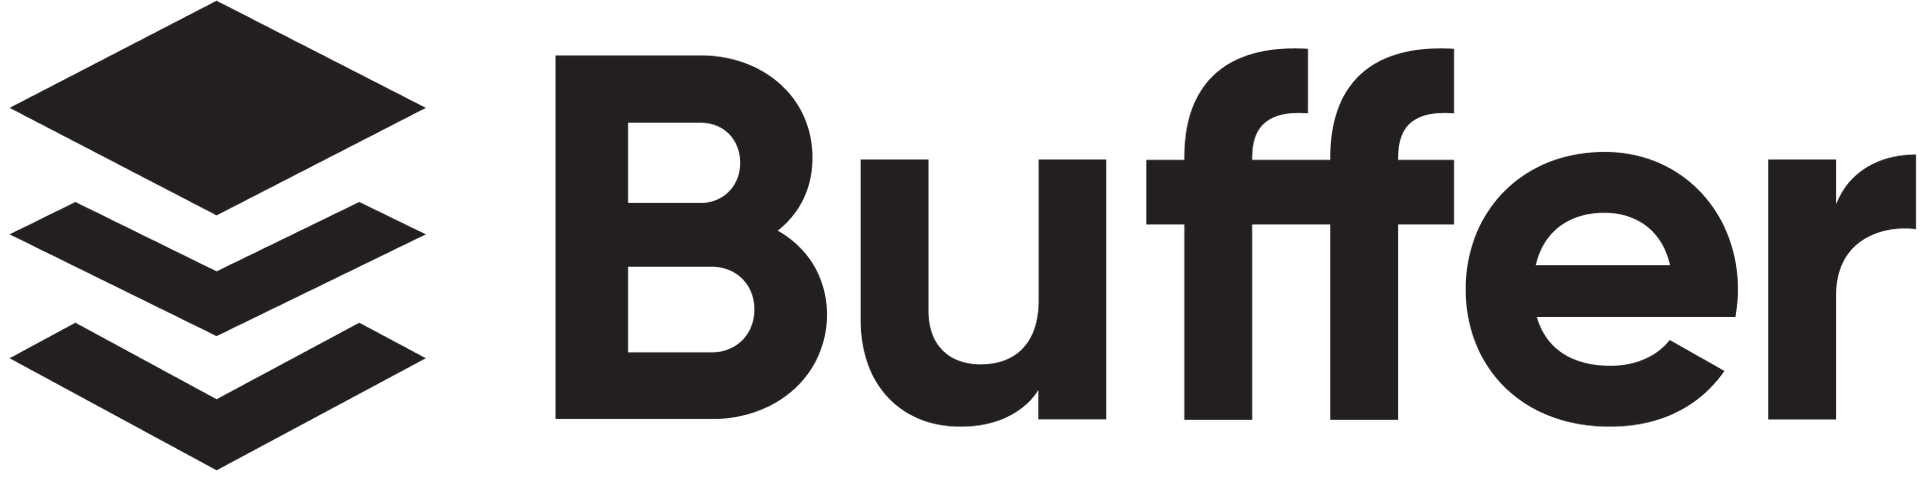 Phill and the Buffer team Buffer-logo@2x